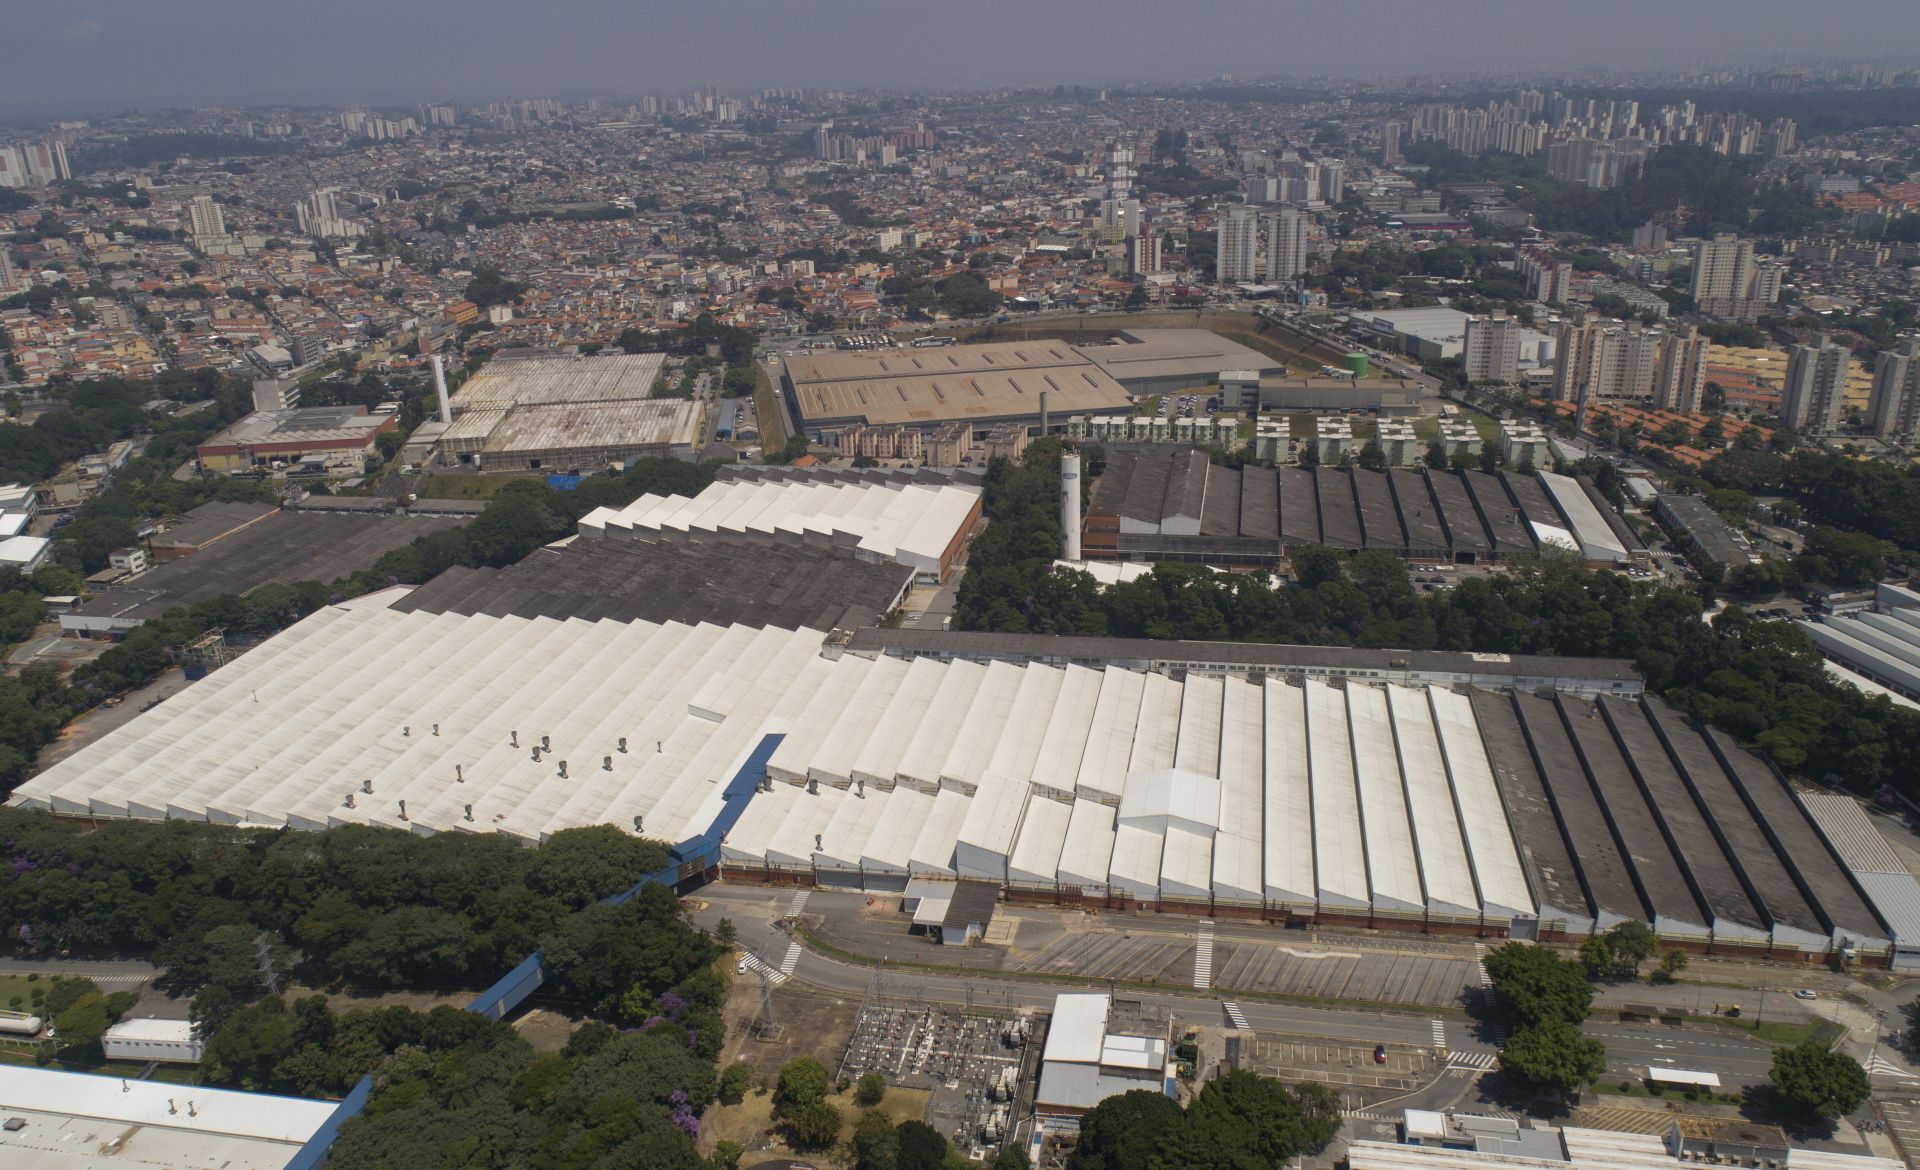 През февруари 2019 година Форд закри най-стария си завод в Бразилия, който се намираше близо до Сао Пауло